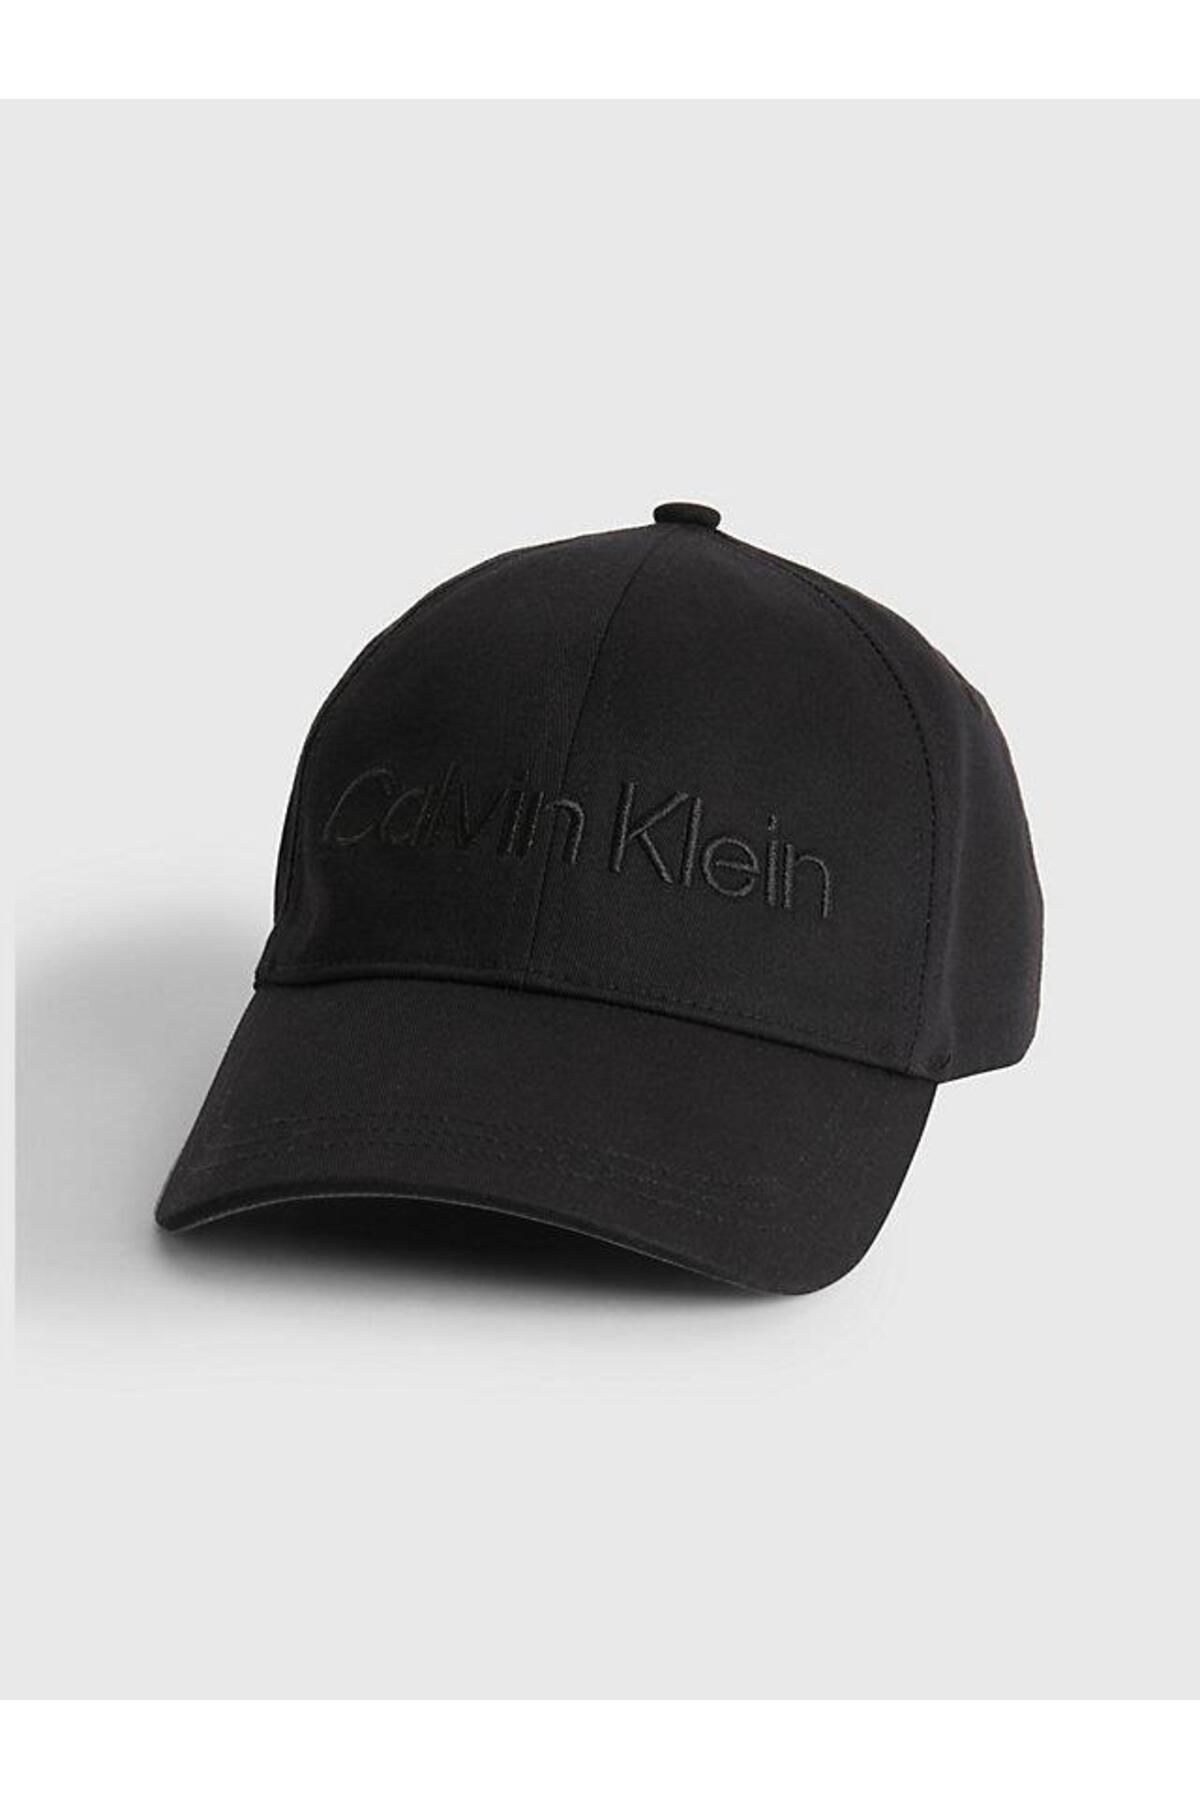 Calvin Klein Ck Must Mınımum Logo Cap